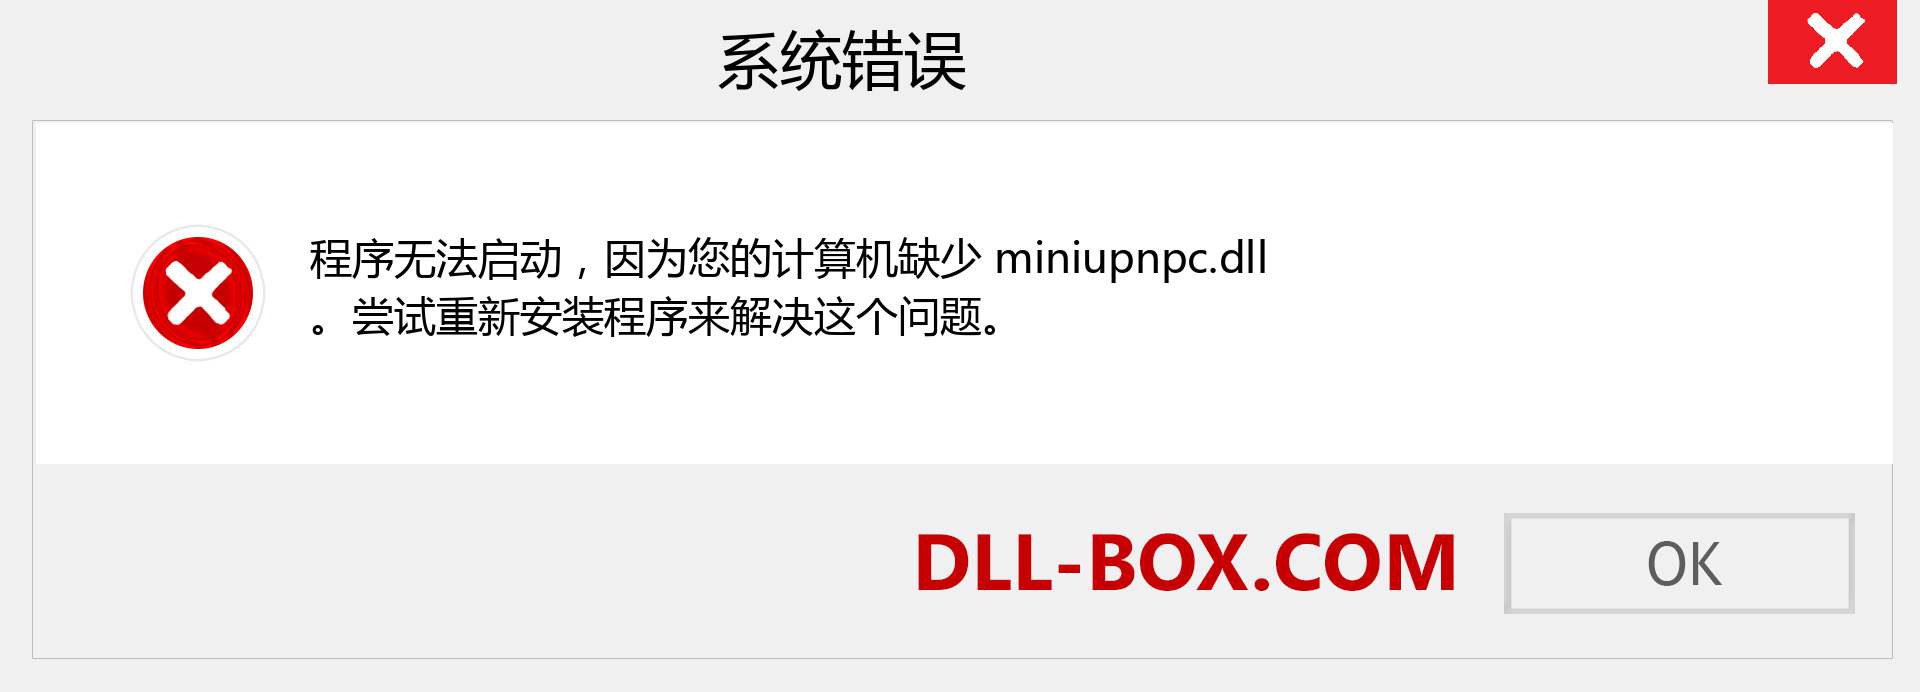 miniupnpc.dll 文件丢失？。 适用于 Windows 7、8、10 的下载 - 修复 Windows、照片、图像上的 miniupnpc dll 丢失错误